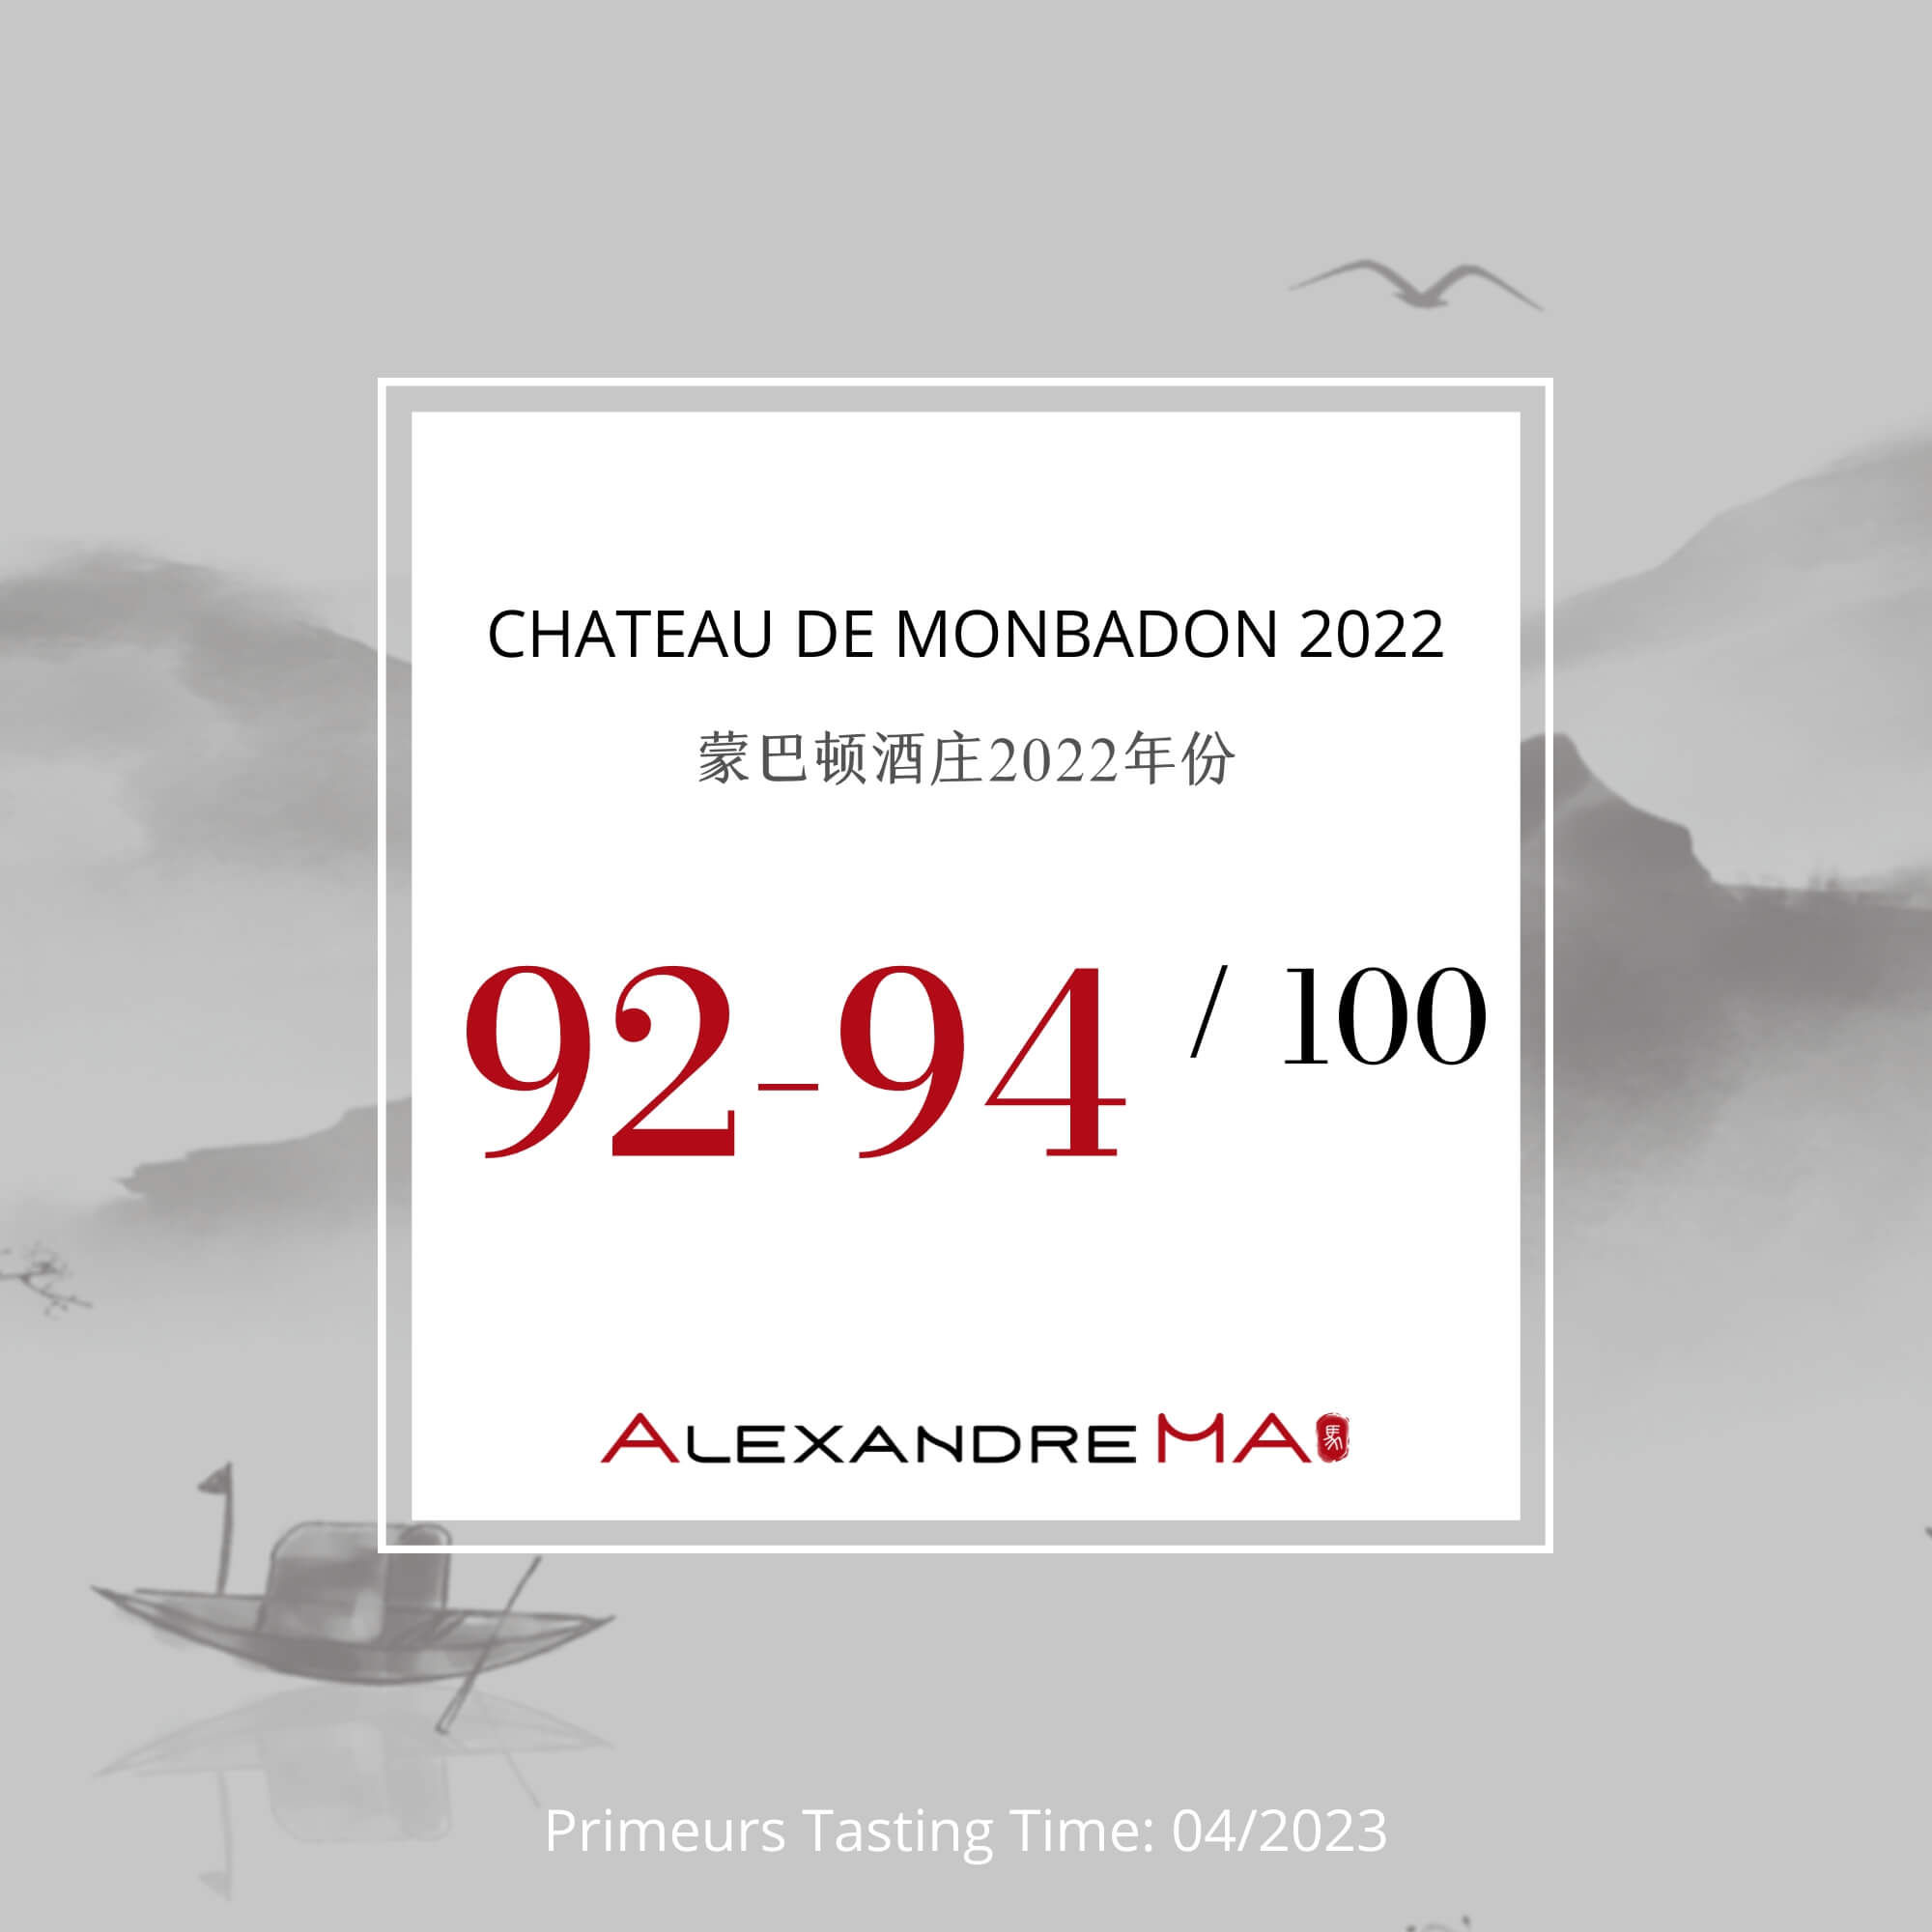 Château Monbadon 2022 Primeurs - Alexandre MA